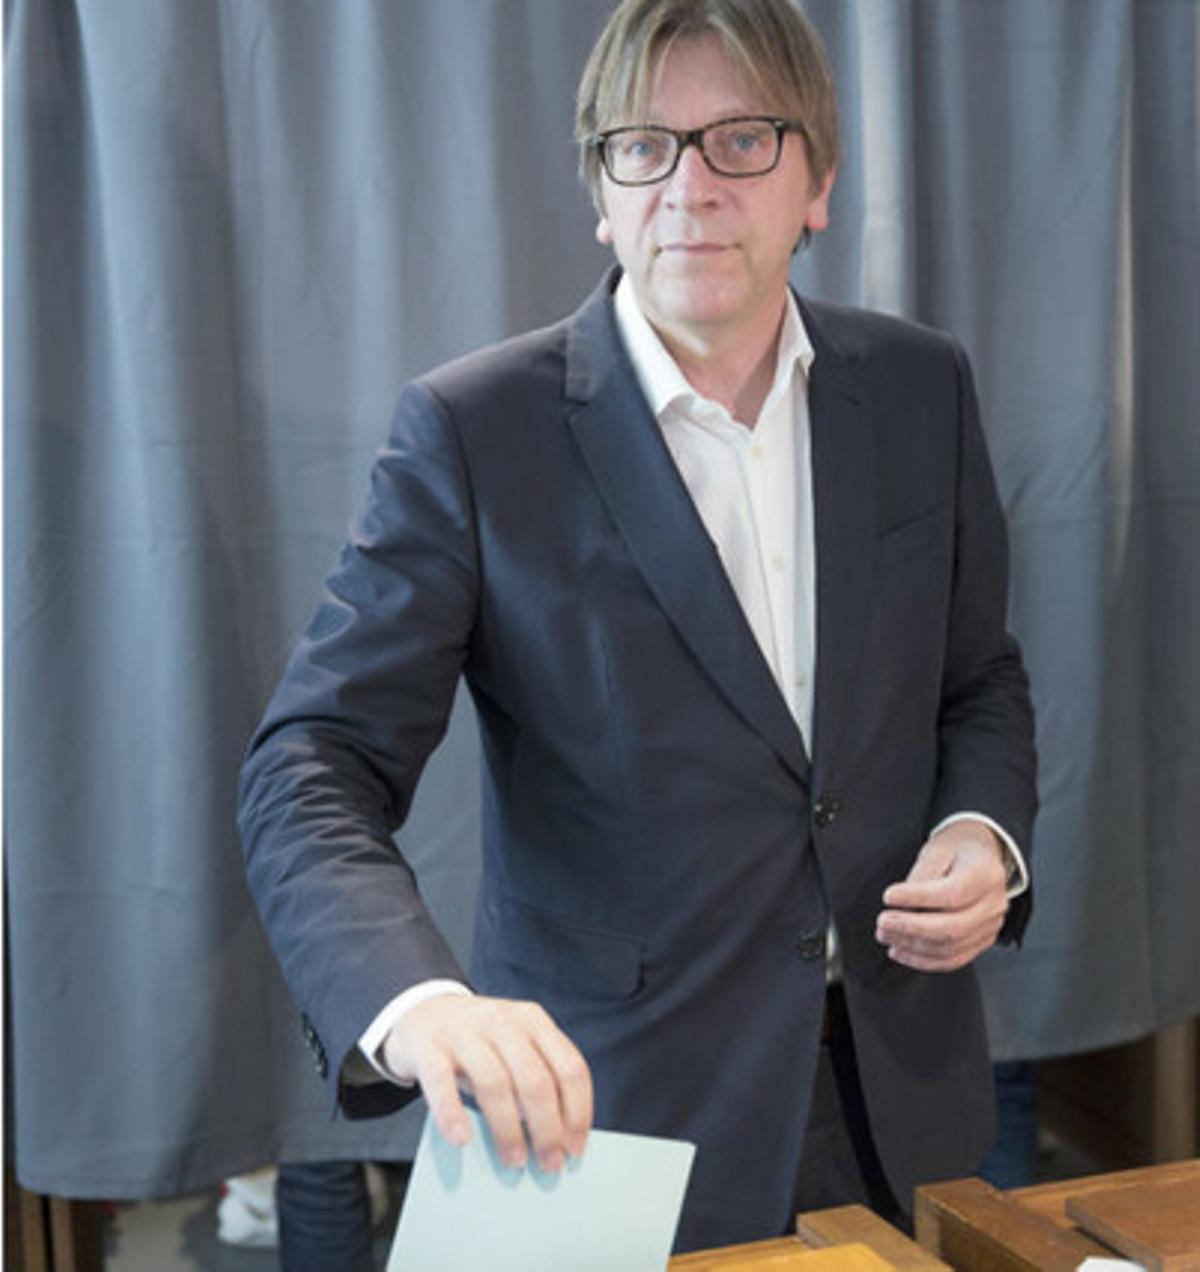 El líder del partit ’Alliance of Liberals and Democrats for Europe’ (ALDE), Guy Verhofstadt, vota a Bèlgica.